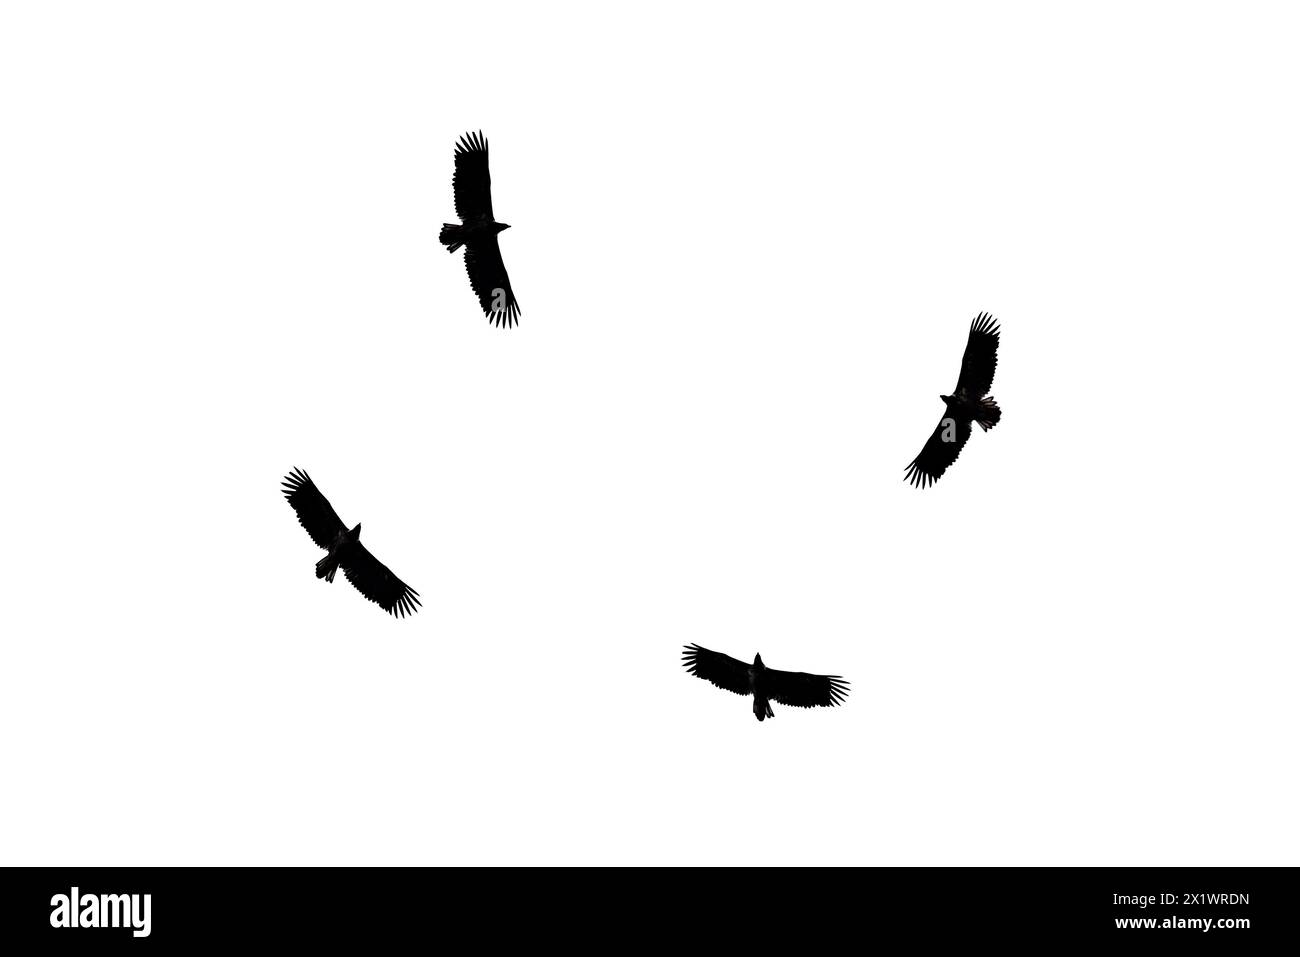 Sagome scure di quattro aquile volanti isolate su sfondo bianco. L'aquila dorata è uno dei più famosi rapaci della famiglia dei falchi, il Foto Stock